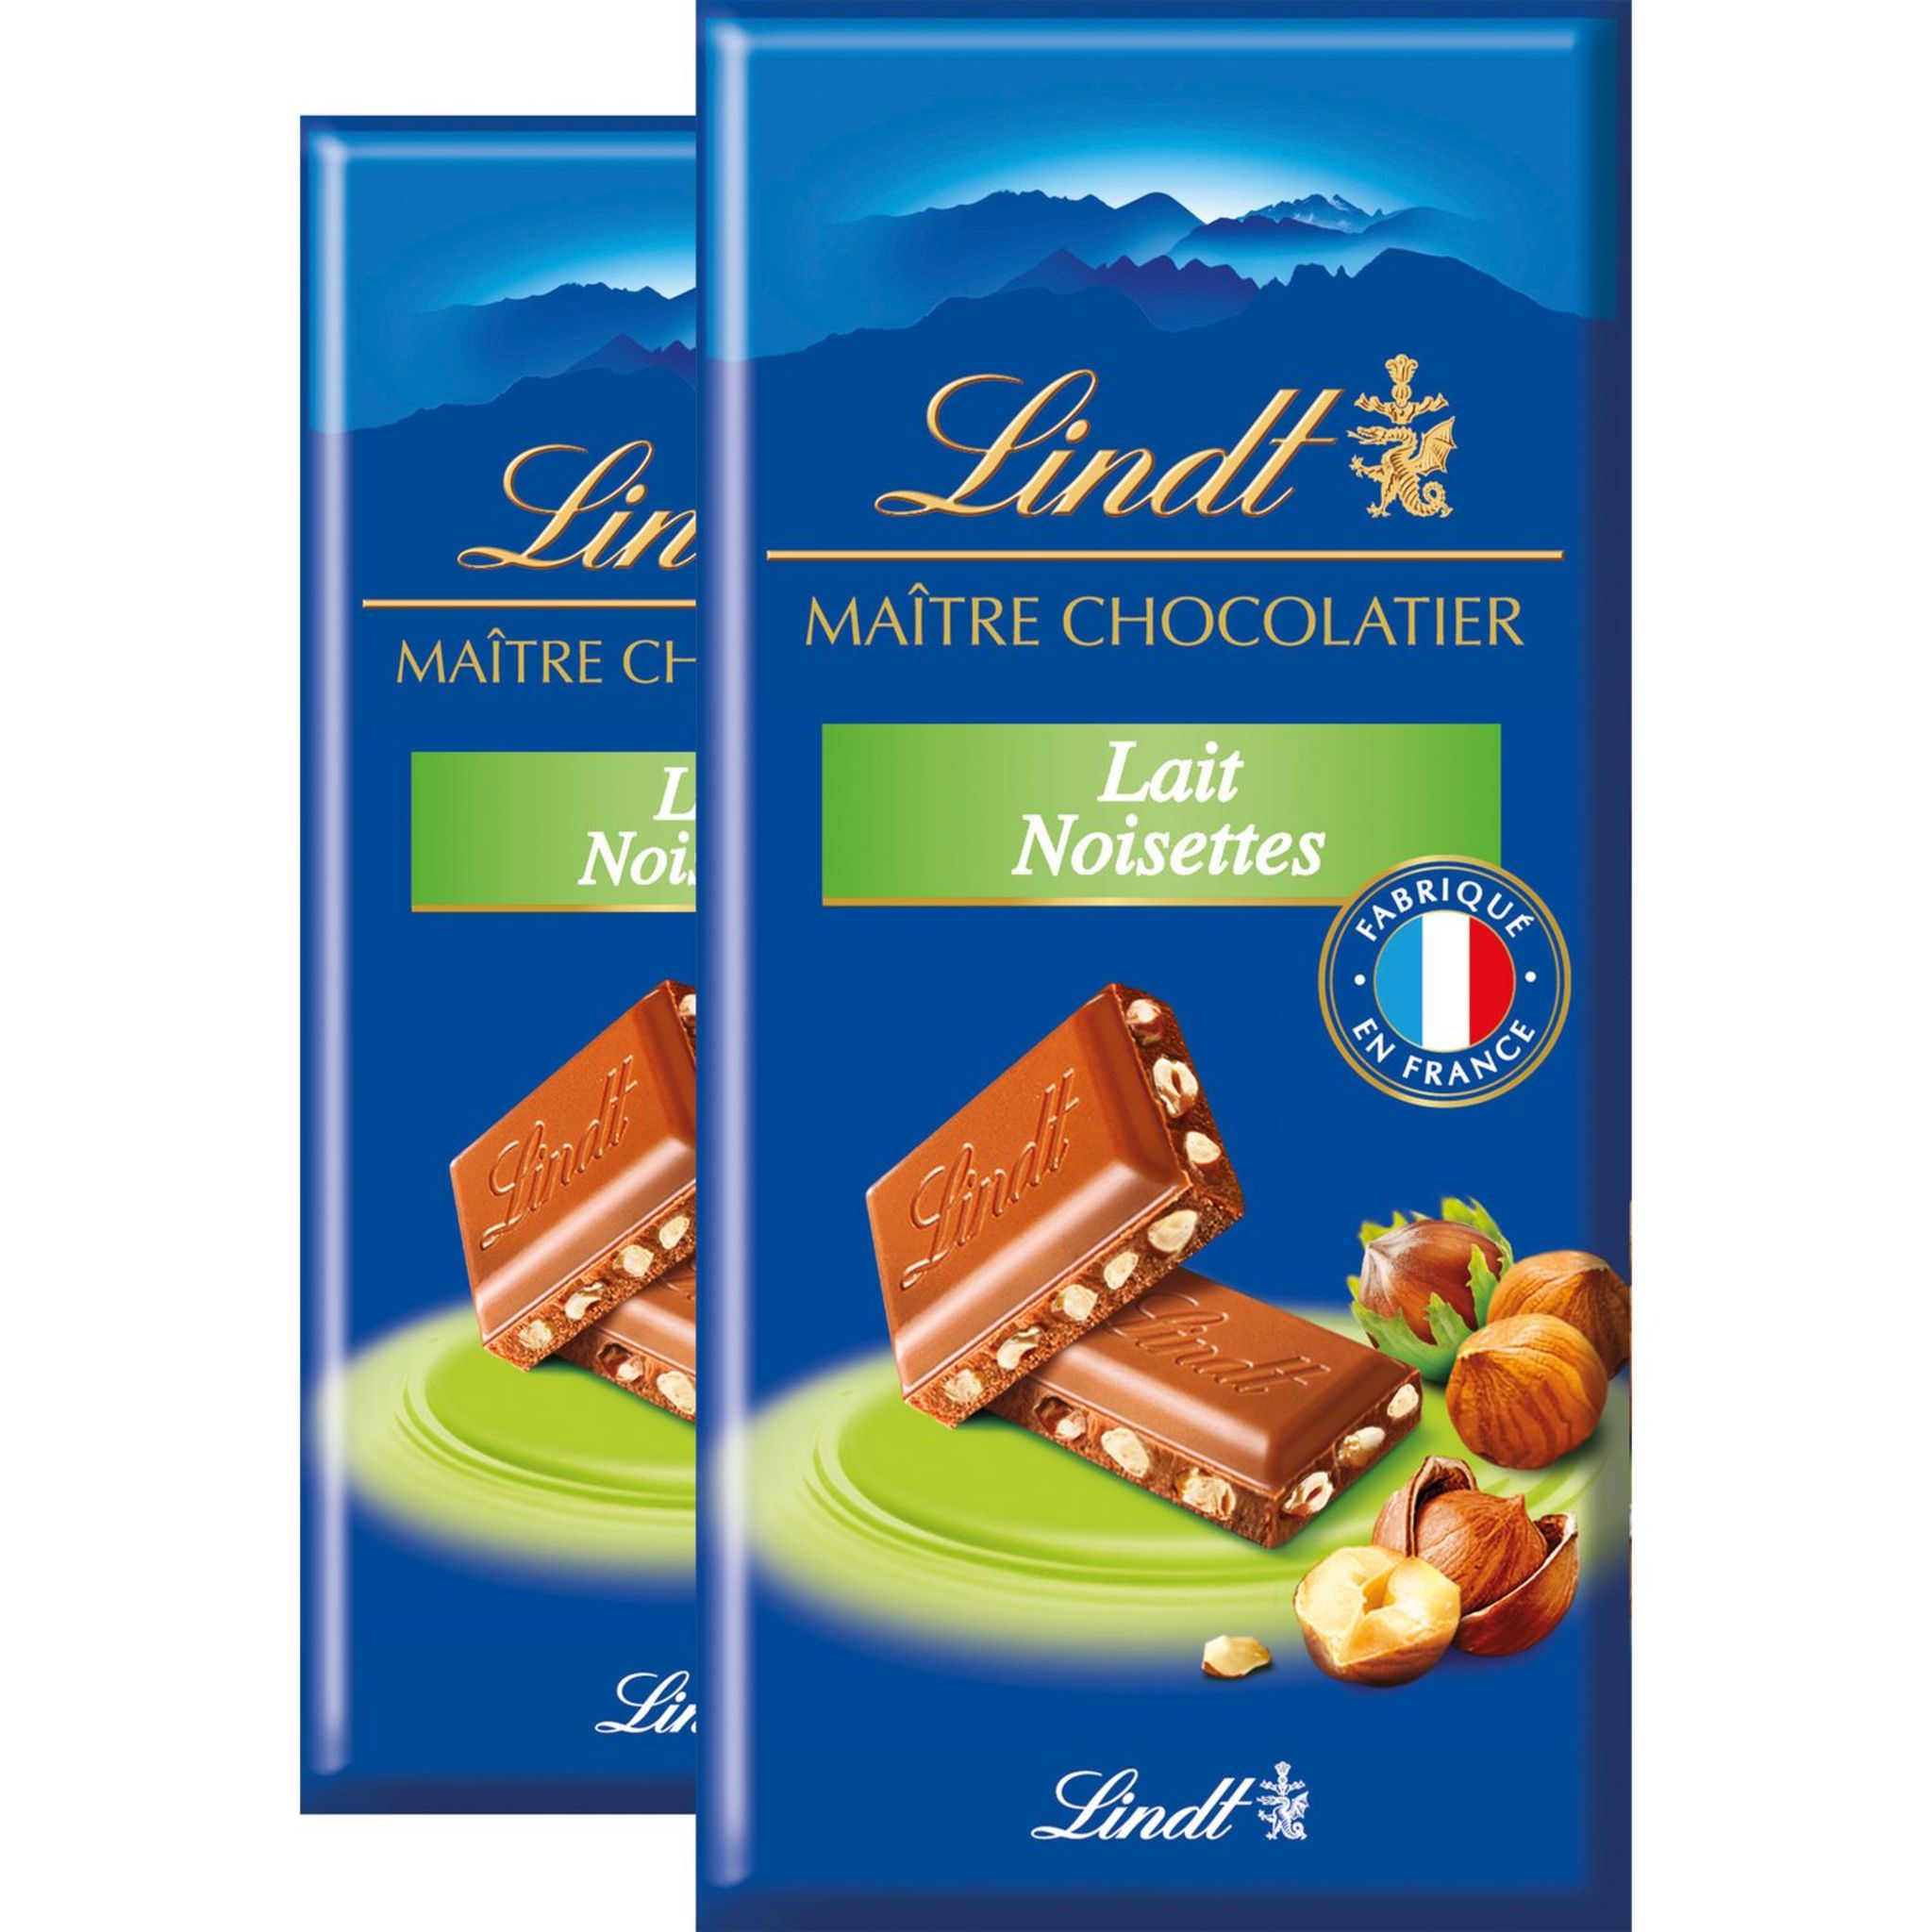 LINDT Les Grandes tablette de chocolat au lait praliné noisettes 1 pièce  225g pas cher 